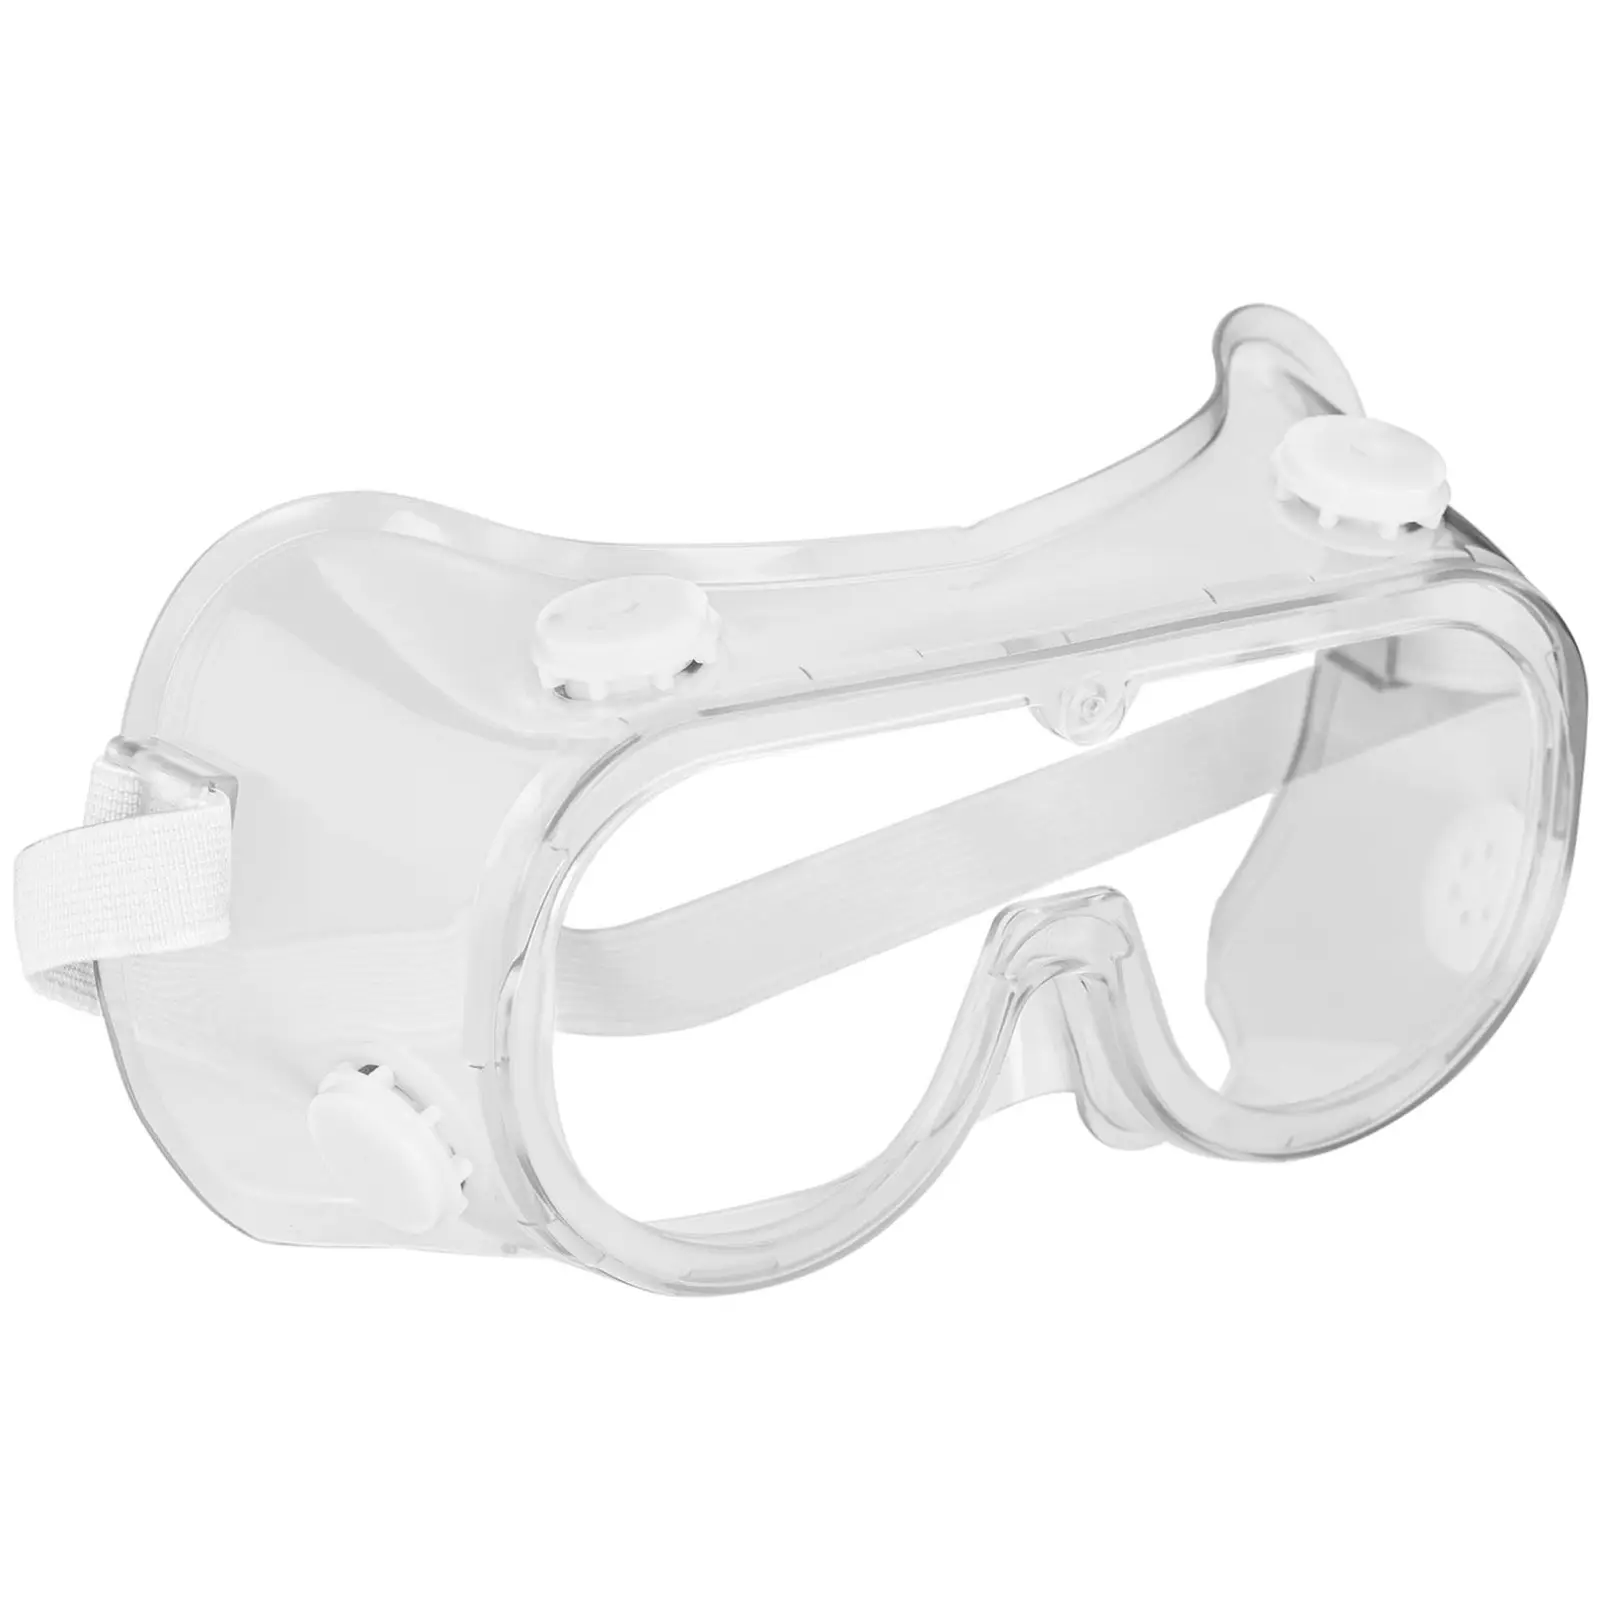 Schutzbrille - 3er Set - klar - Einheitsgröße